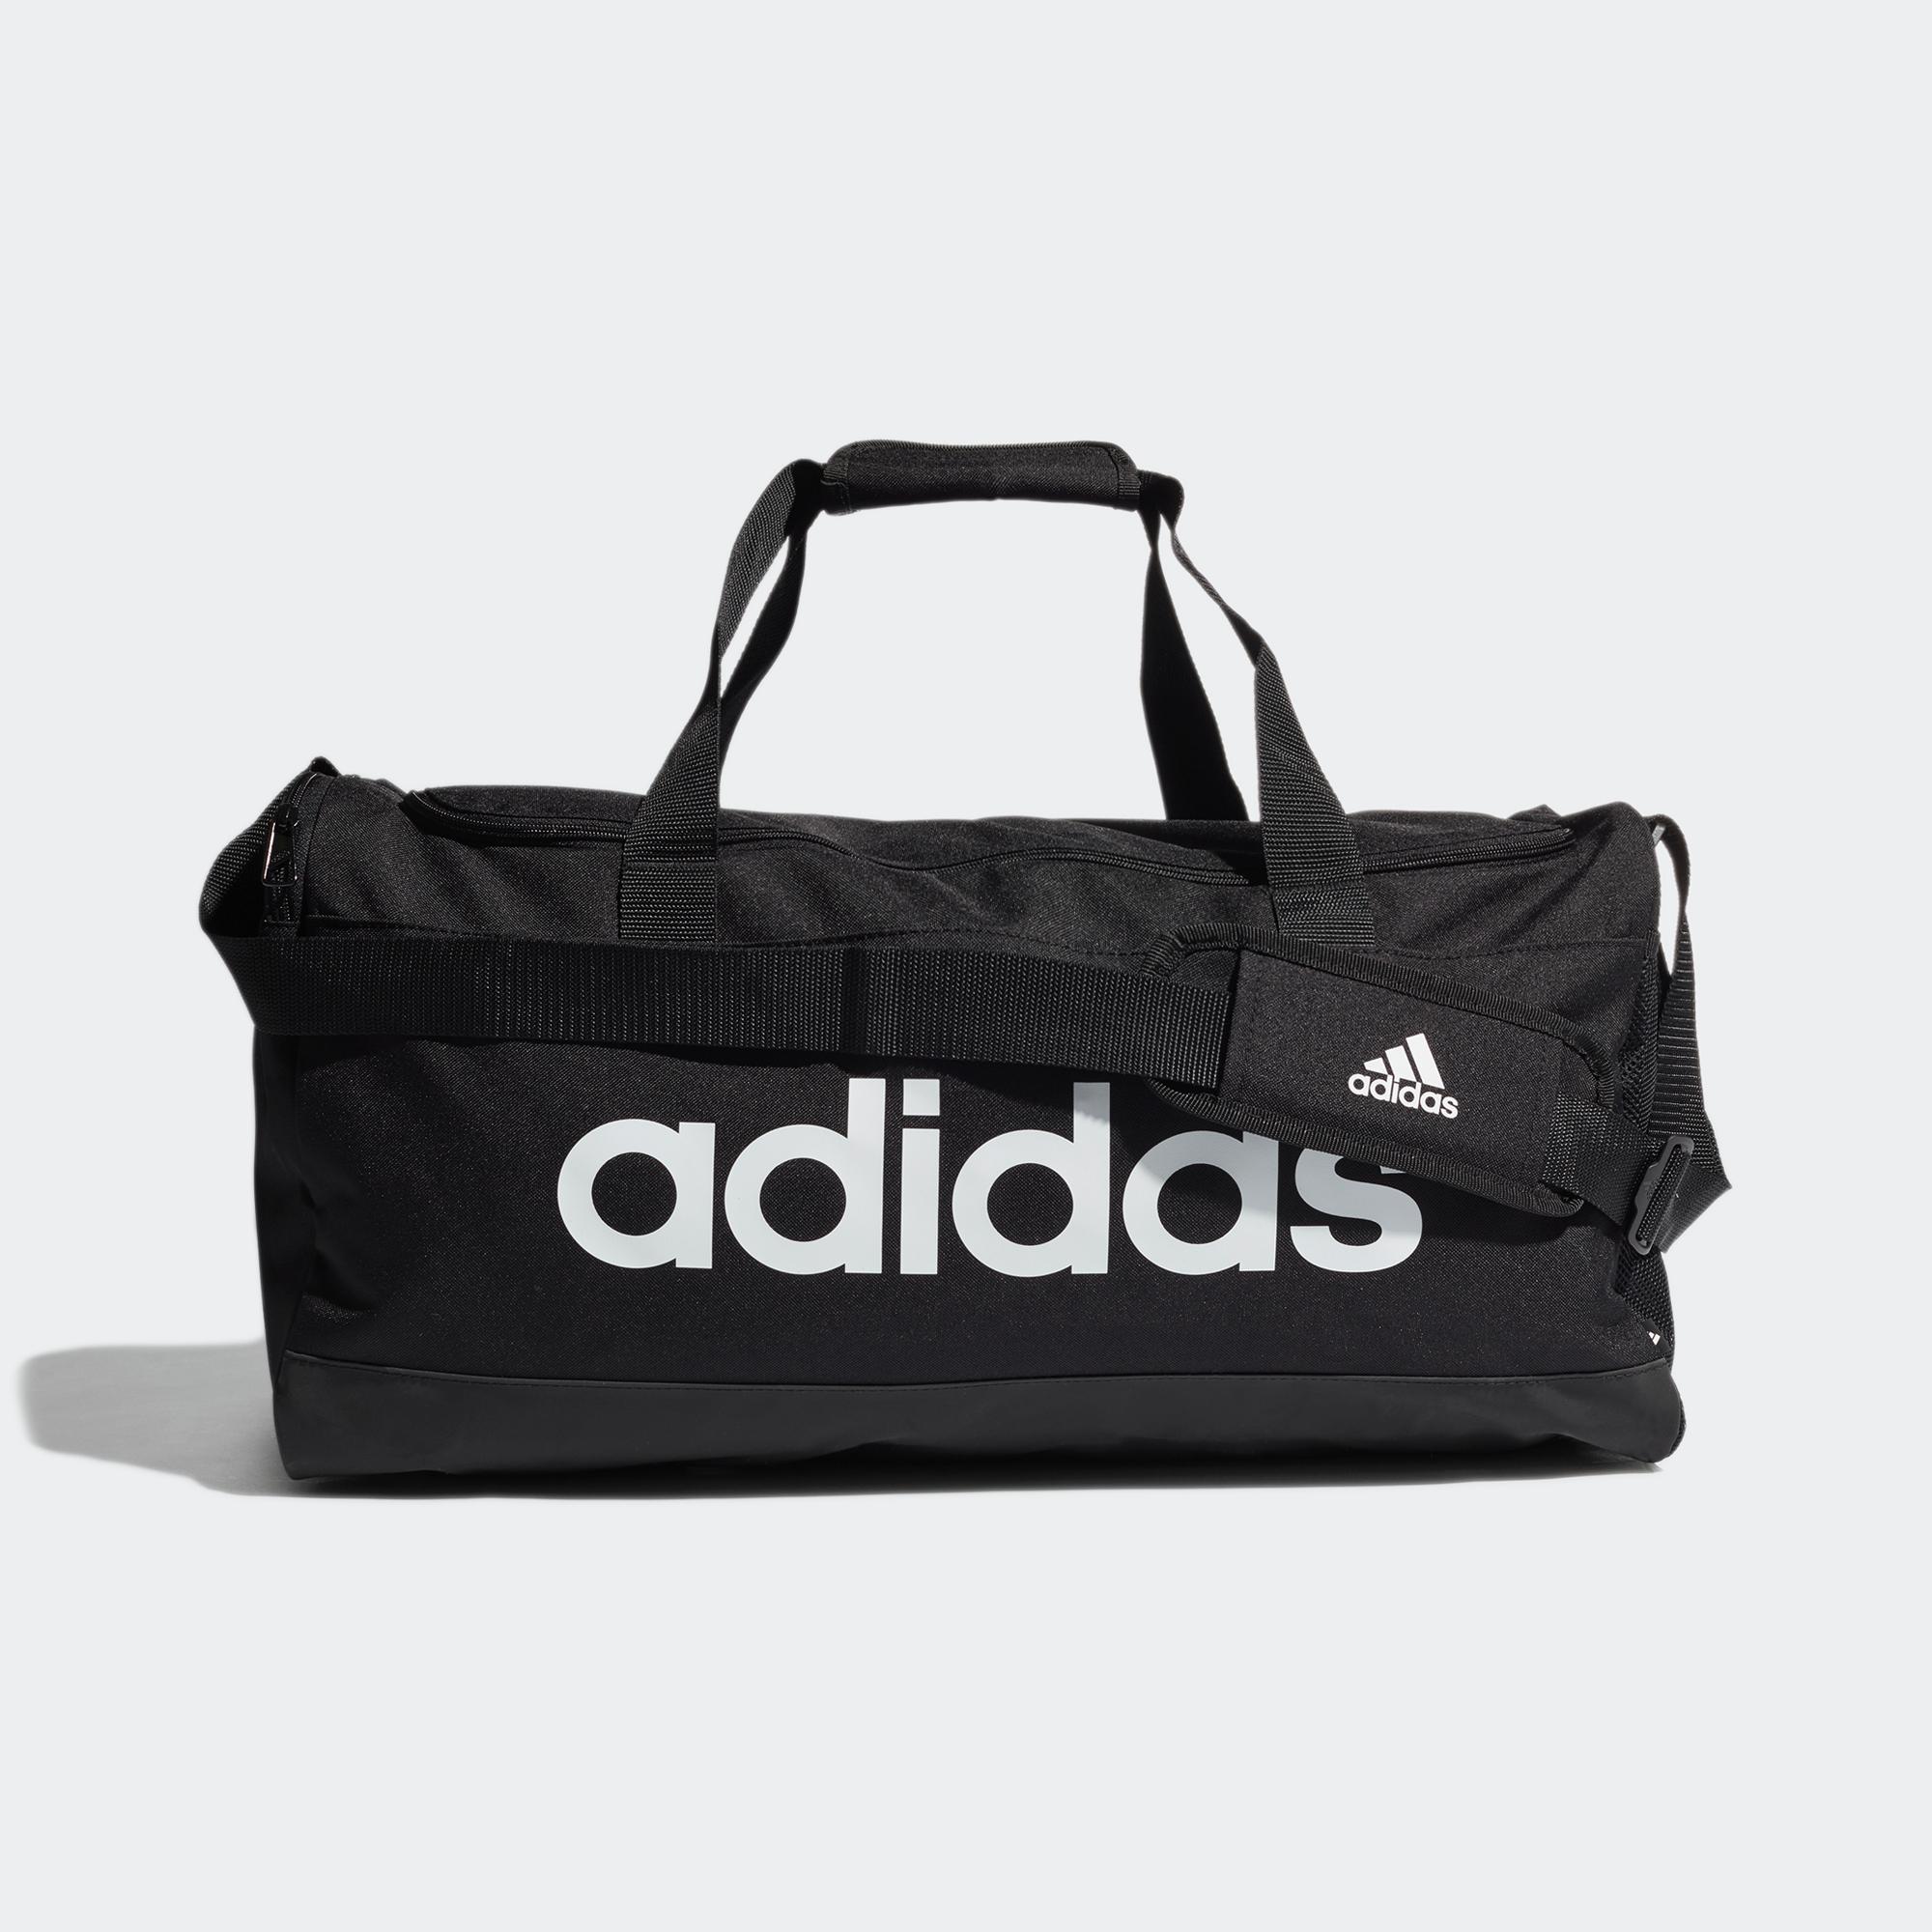 adidas-Team-Issue-Duffel-Bag-Medium